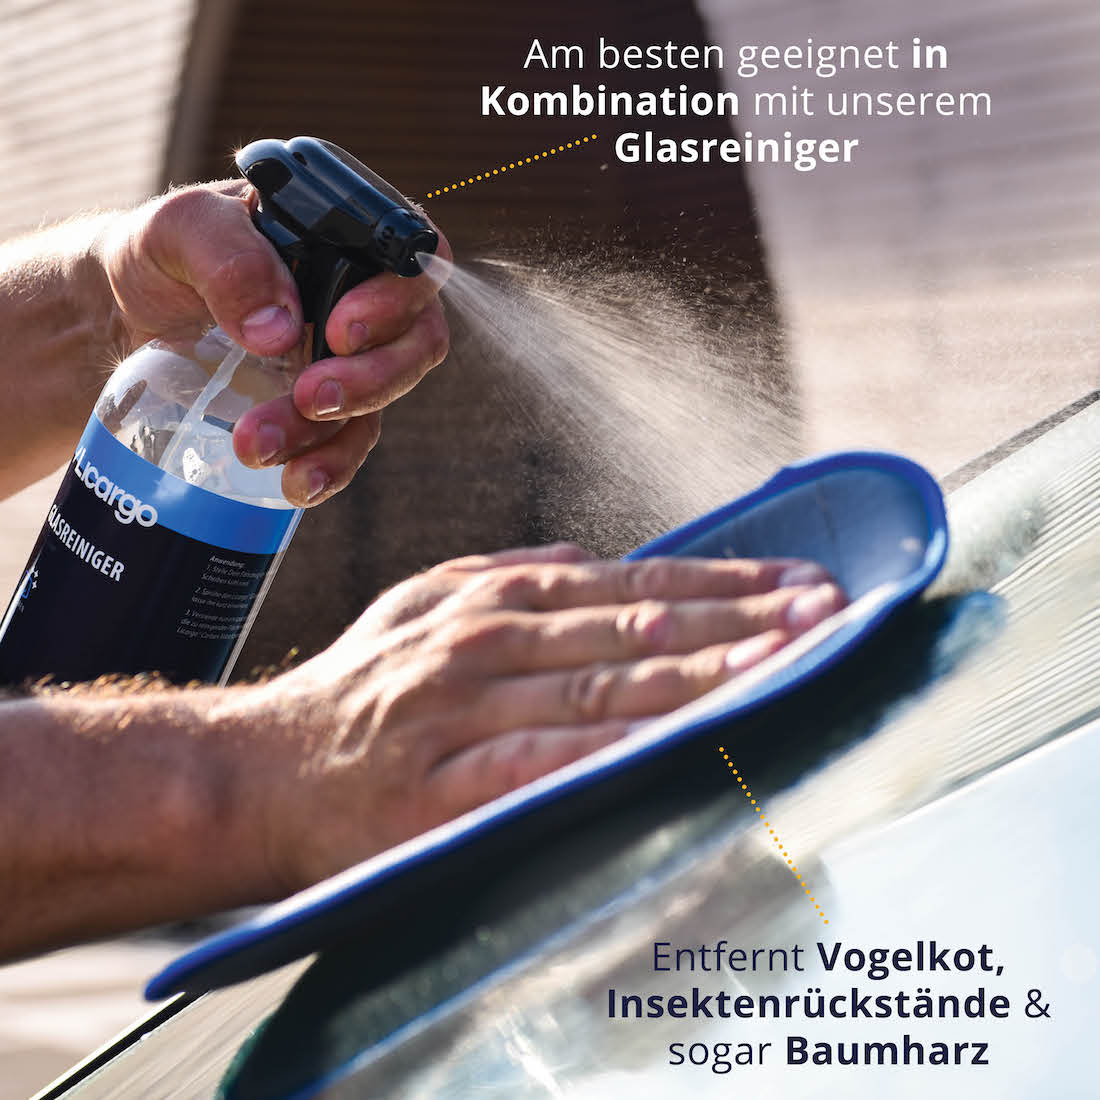 Optimales Handling=>Die kompakte Form ermöglicht eine effiziente Reinigung Deiner Autoscheiben und ist somit  ein praktisches Hilfsmittel für strahlend saubere Autoscheiben.